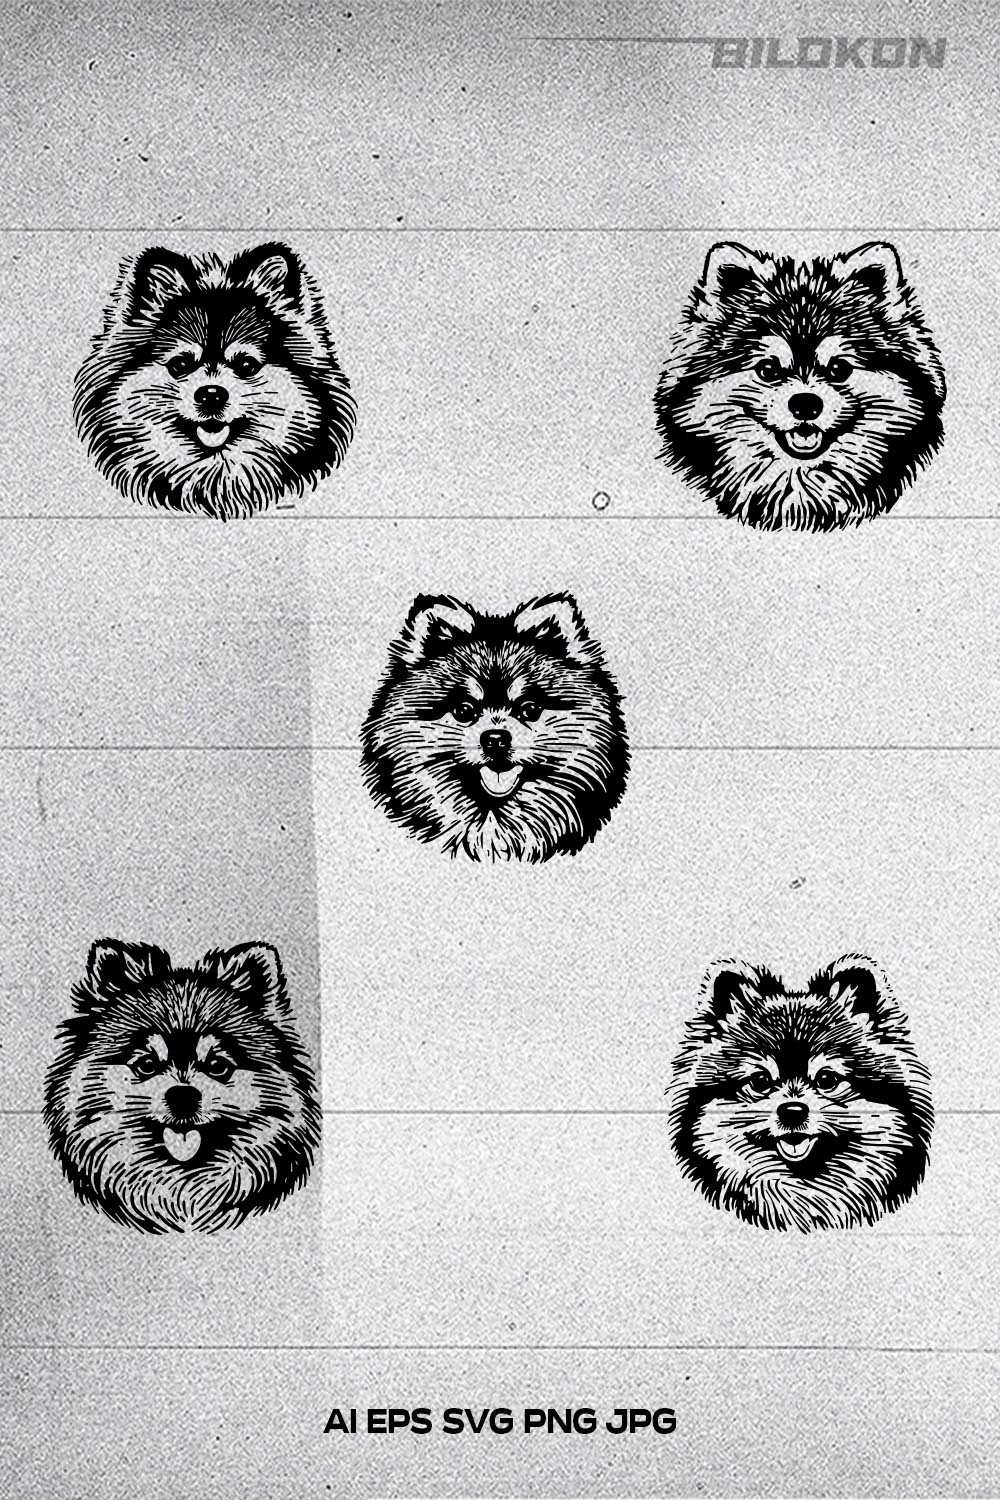 Pomeranian spitz dog head, SVG, Vector, Illustration, SVG Bundle pinterest preview image.